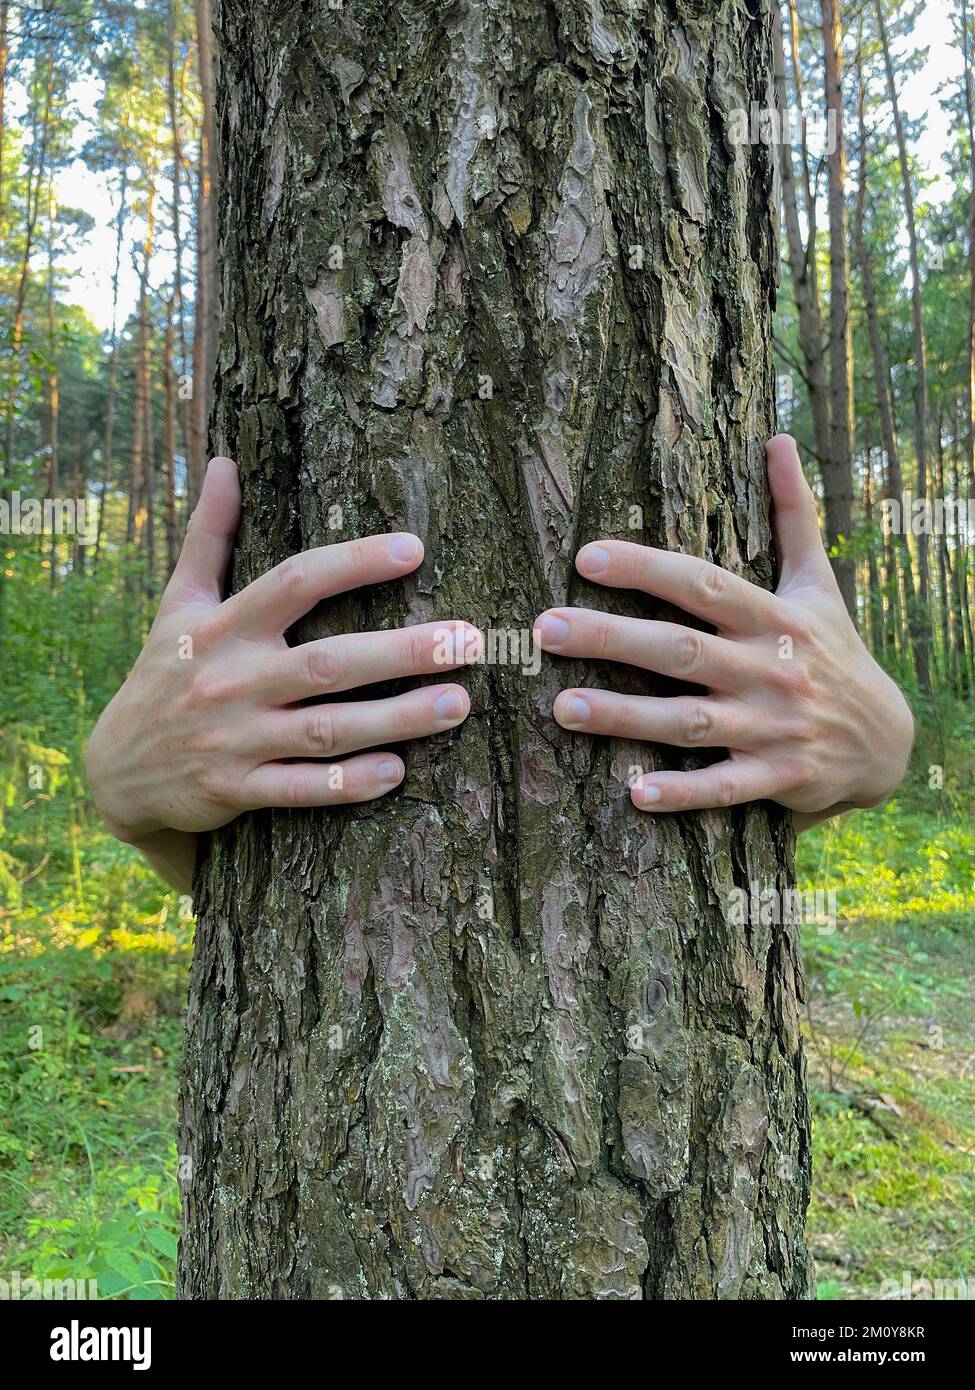 Les bras de quelqu'un autour du tronc d'un arbre, foyer sélectif. Concept d'amour pour la nature Banque D'Images